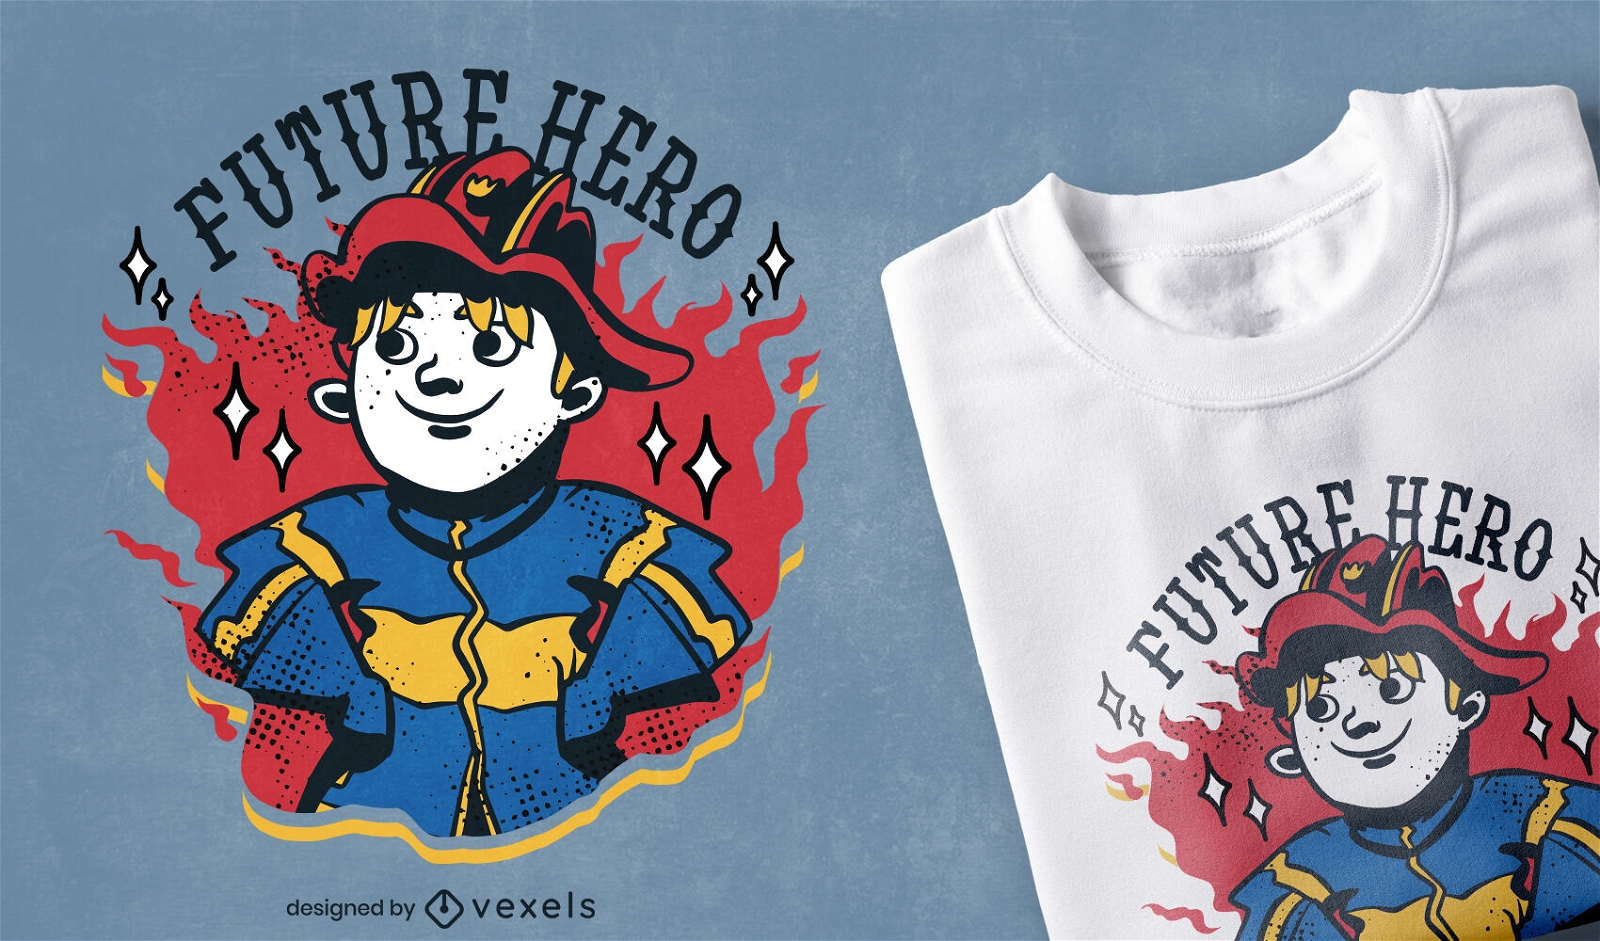 Dise?o de camiseta de bombero futuro h?roe.